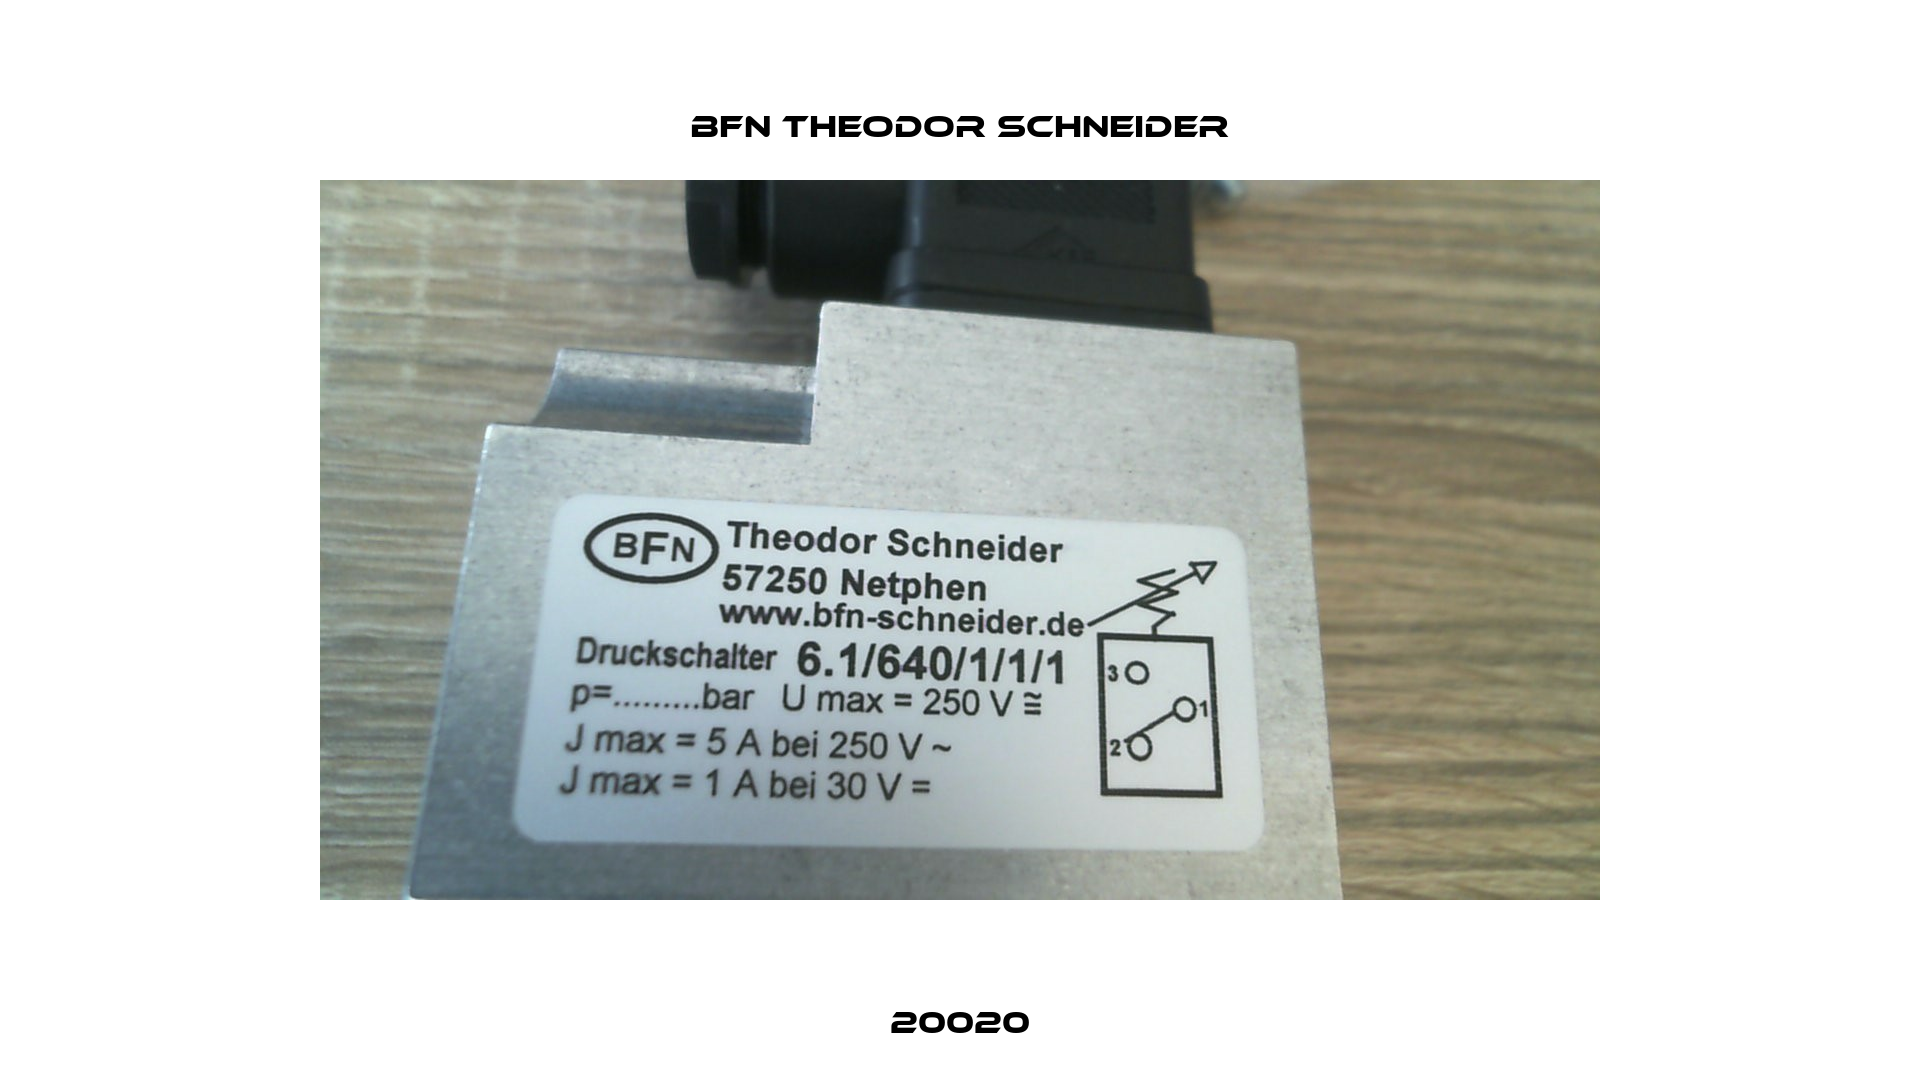 6.1/640/1/1/1 BFN Theodor Schneider